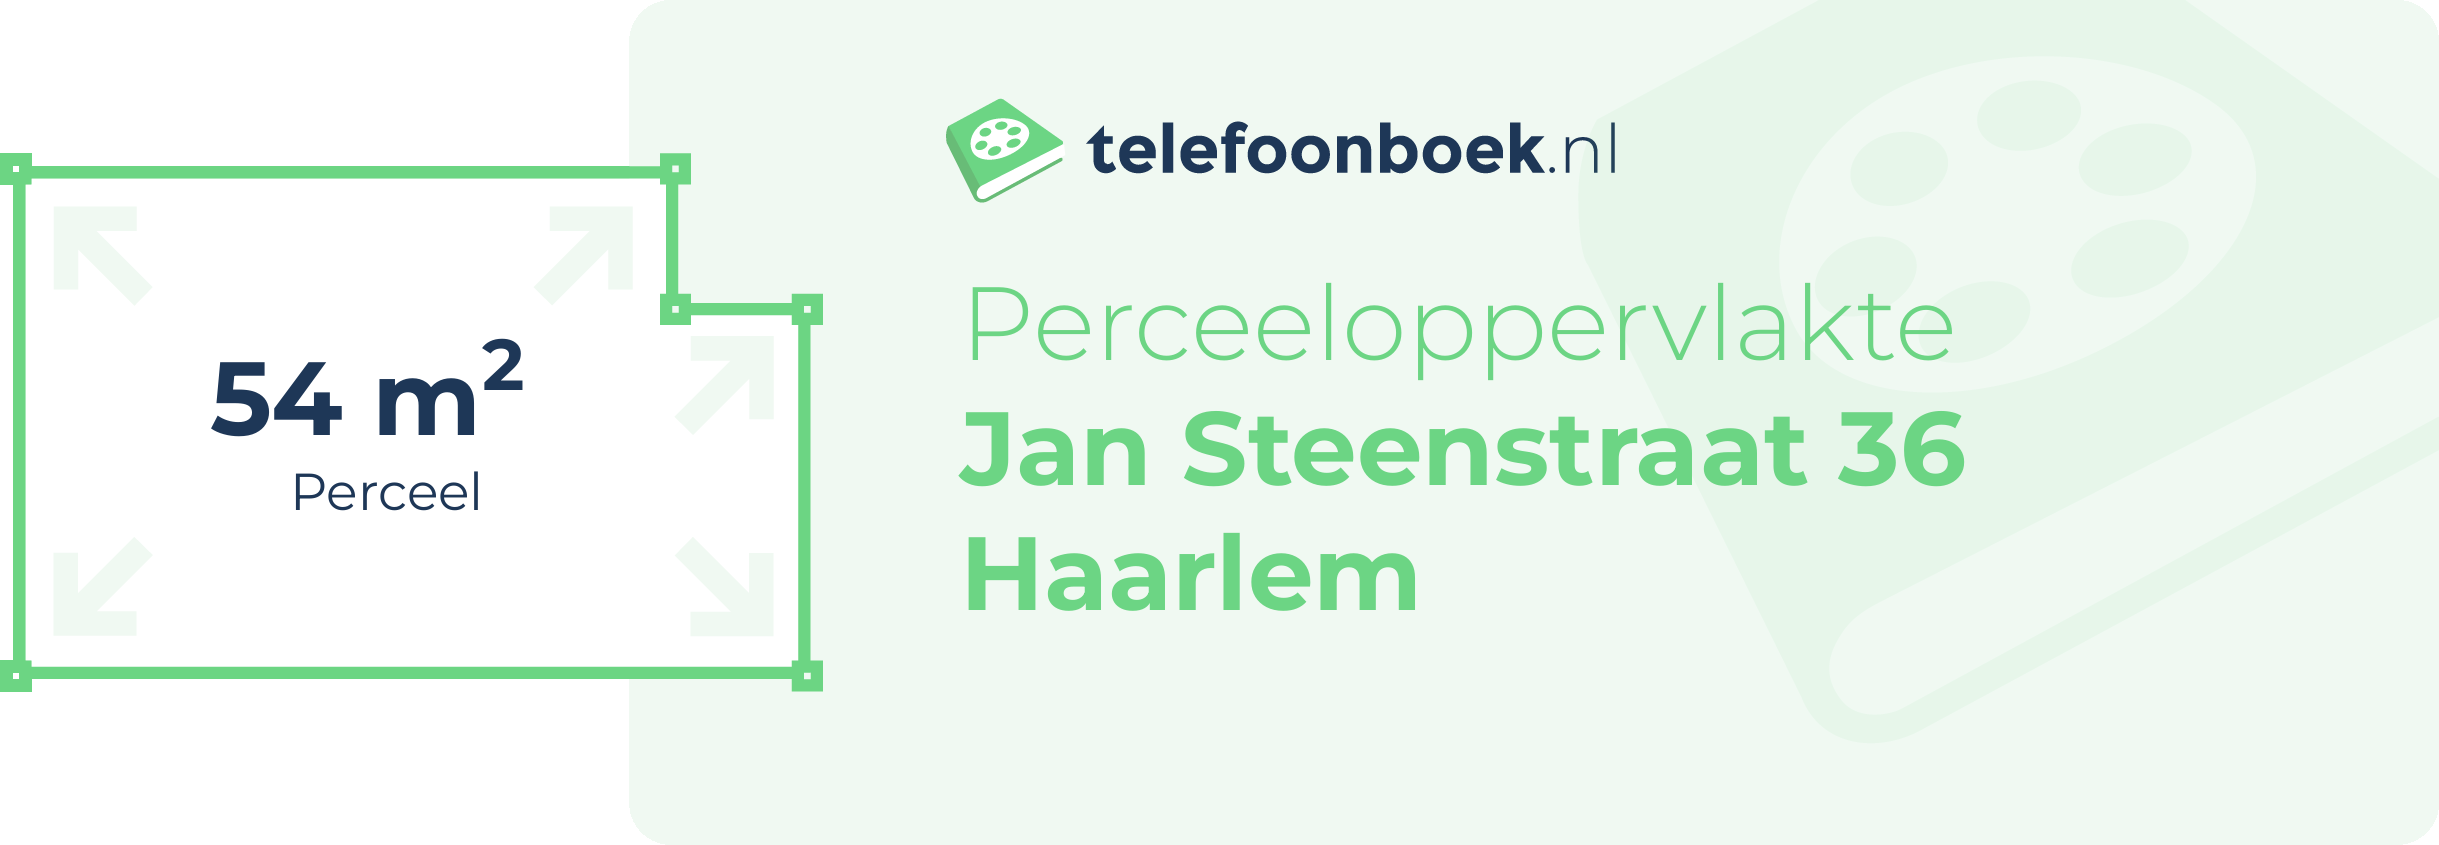 Perceeloppervlakte Jan Steenstraat 36 Haarlem